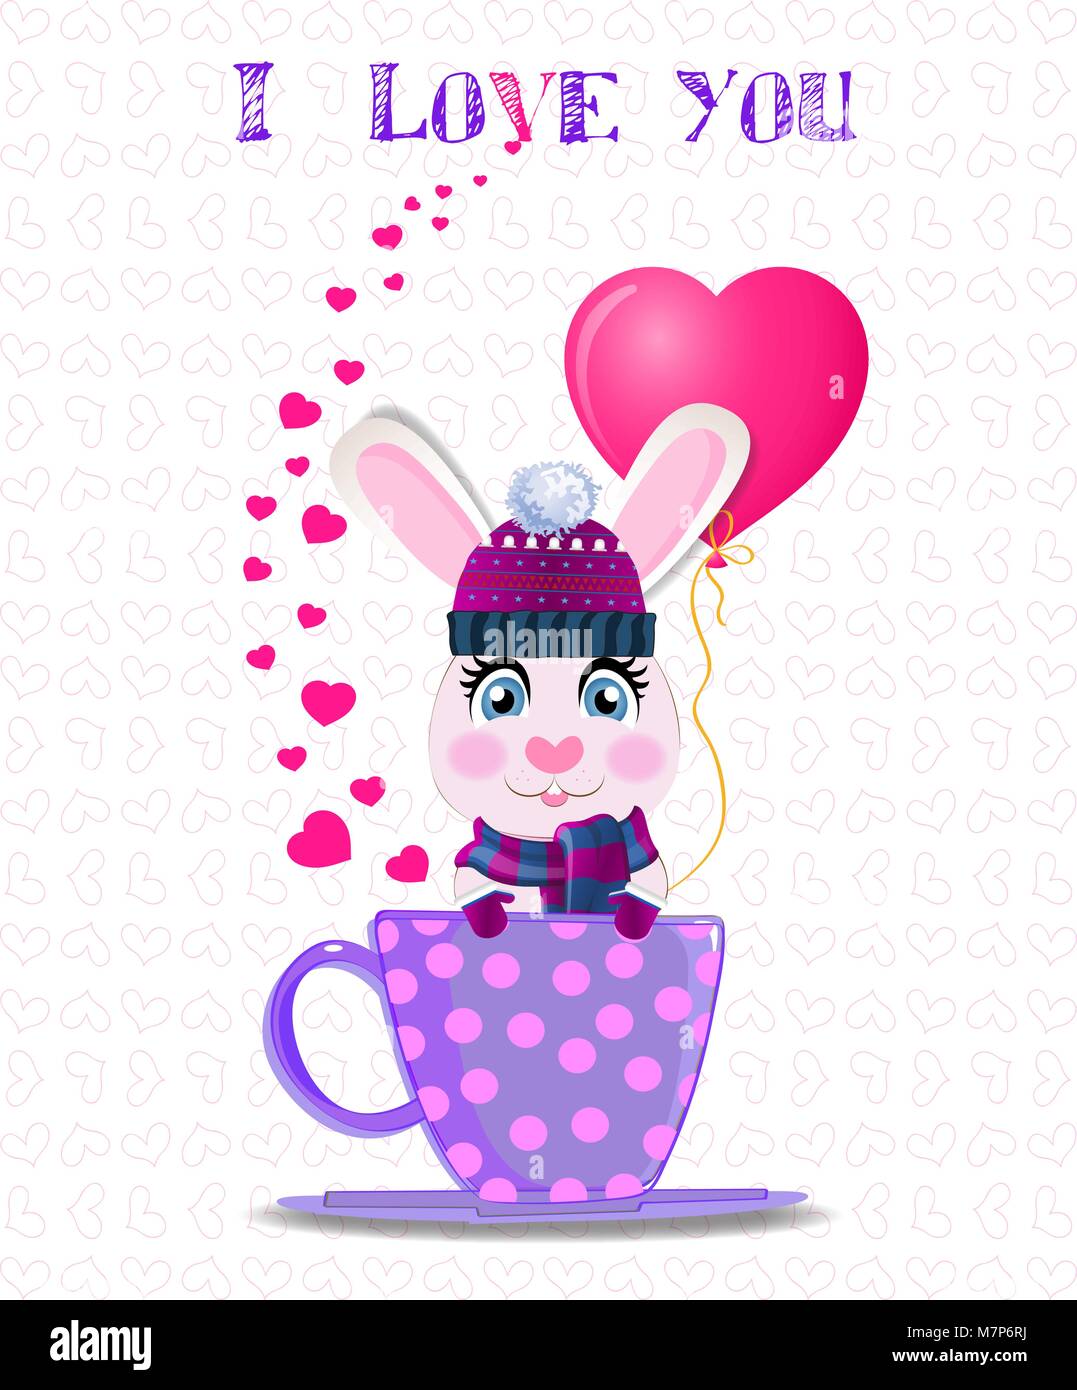 Carte de souhaits avec cute cartoon lapin en violet bonnet, écharpe en tricot et mitaines holding ballon coeur rose lilas, assis dans la tasse à pois et t Illustration de Vecteur